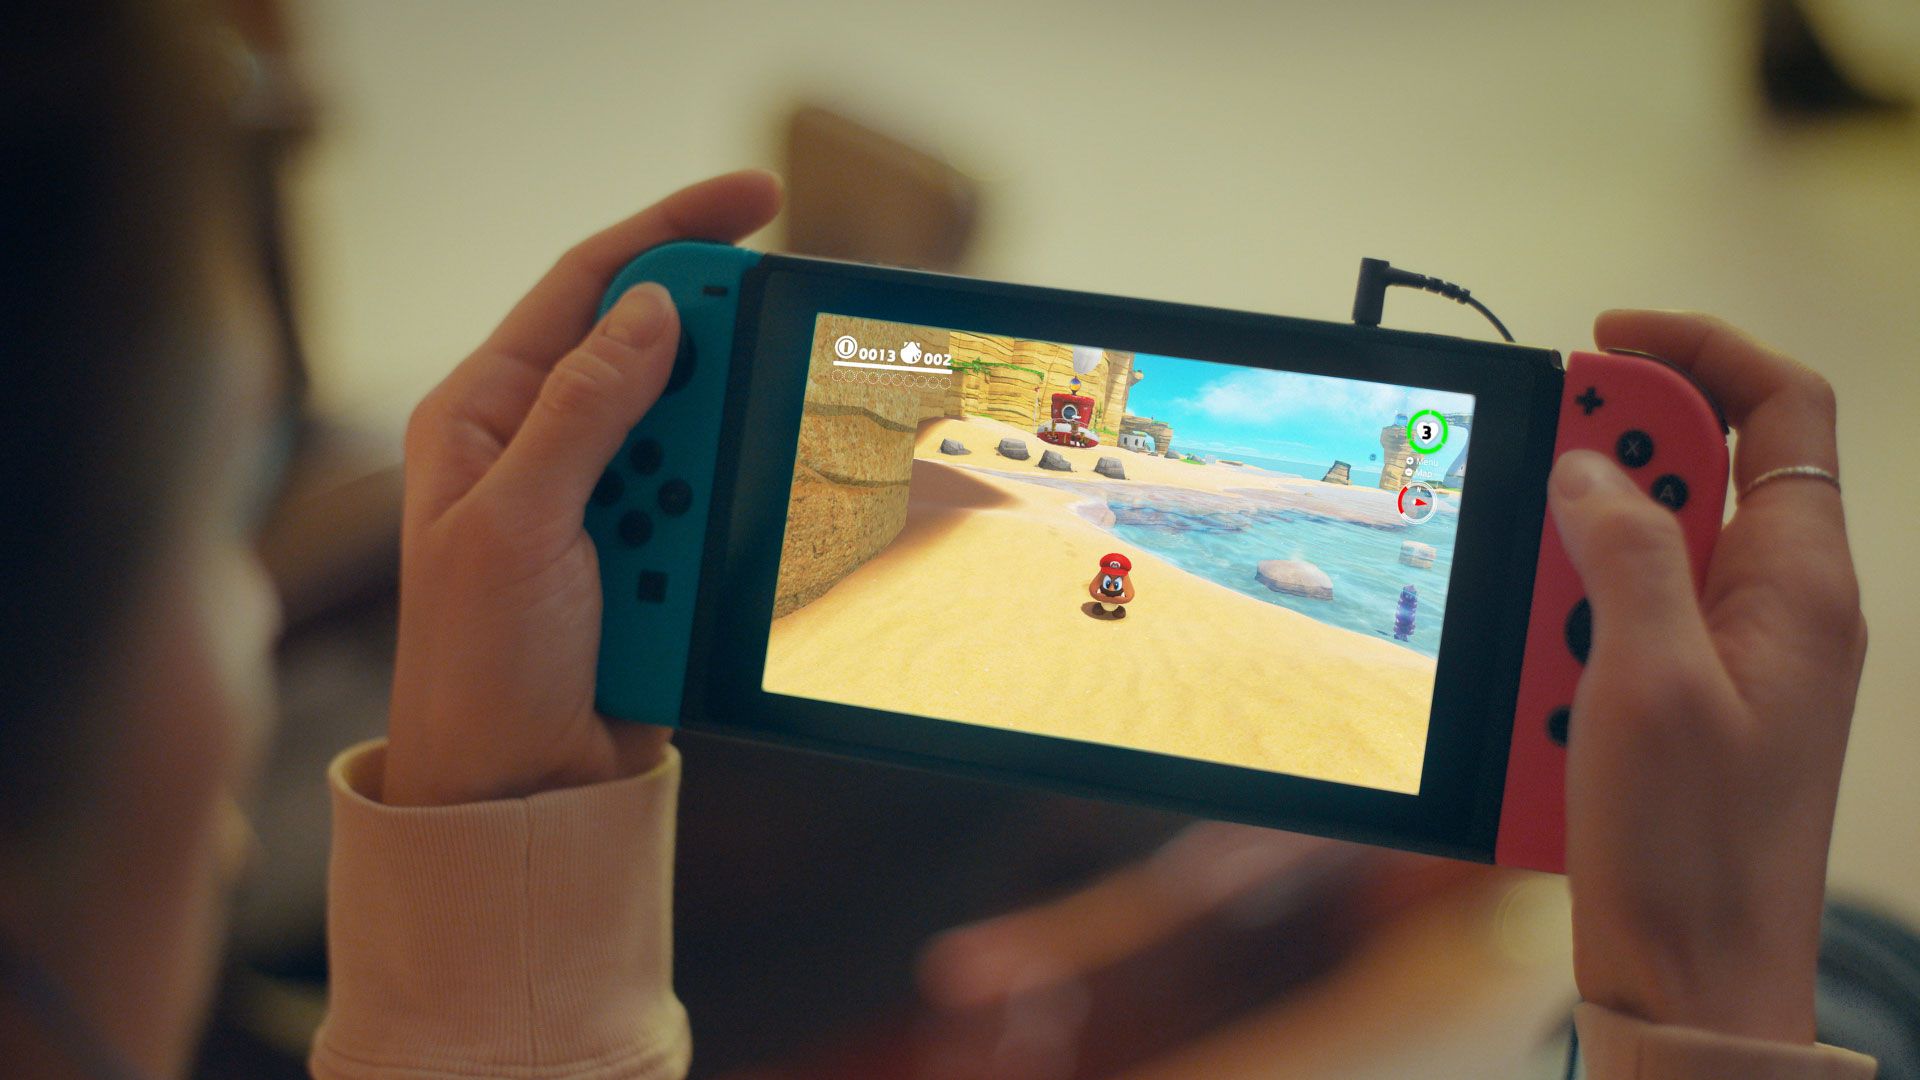 Emuladores de Nintendo Switch vão acabar, promete empresa